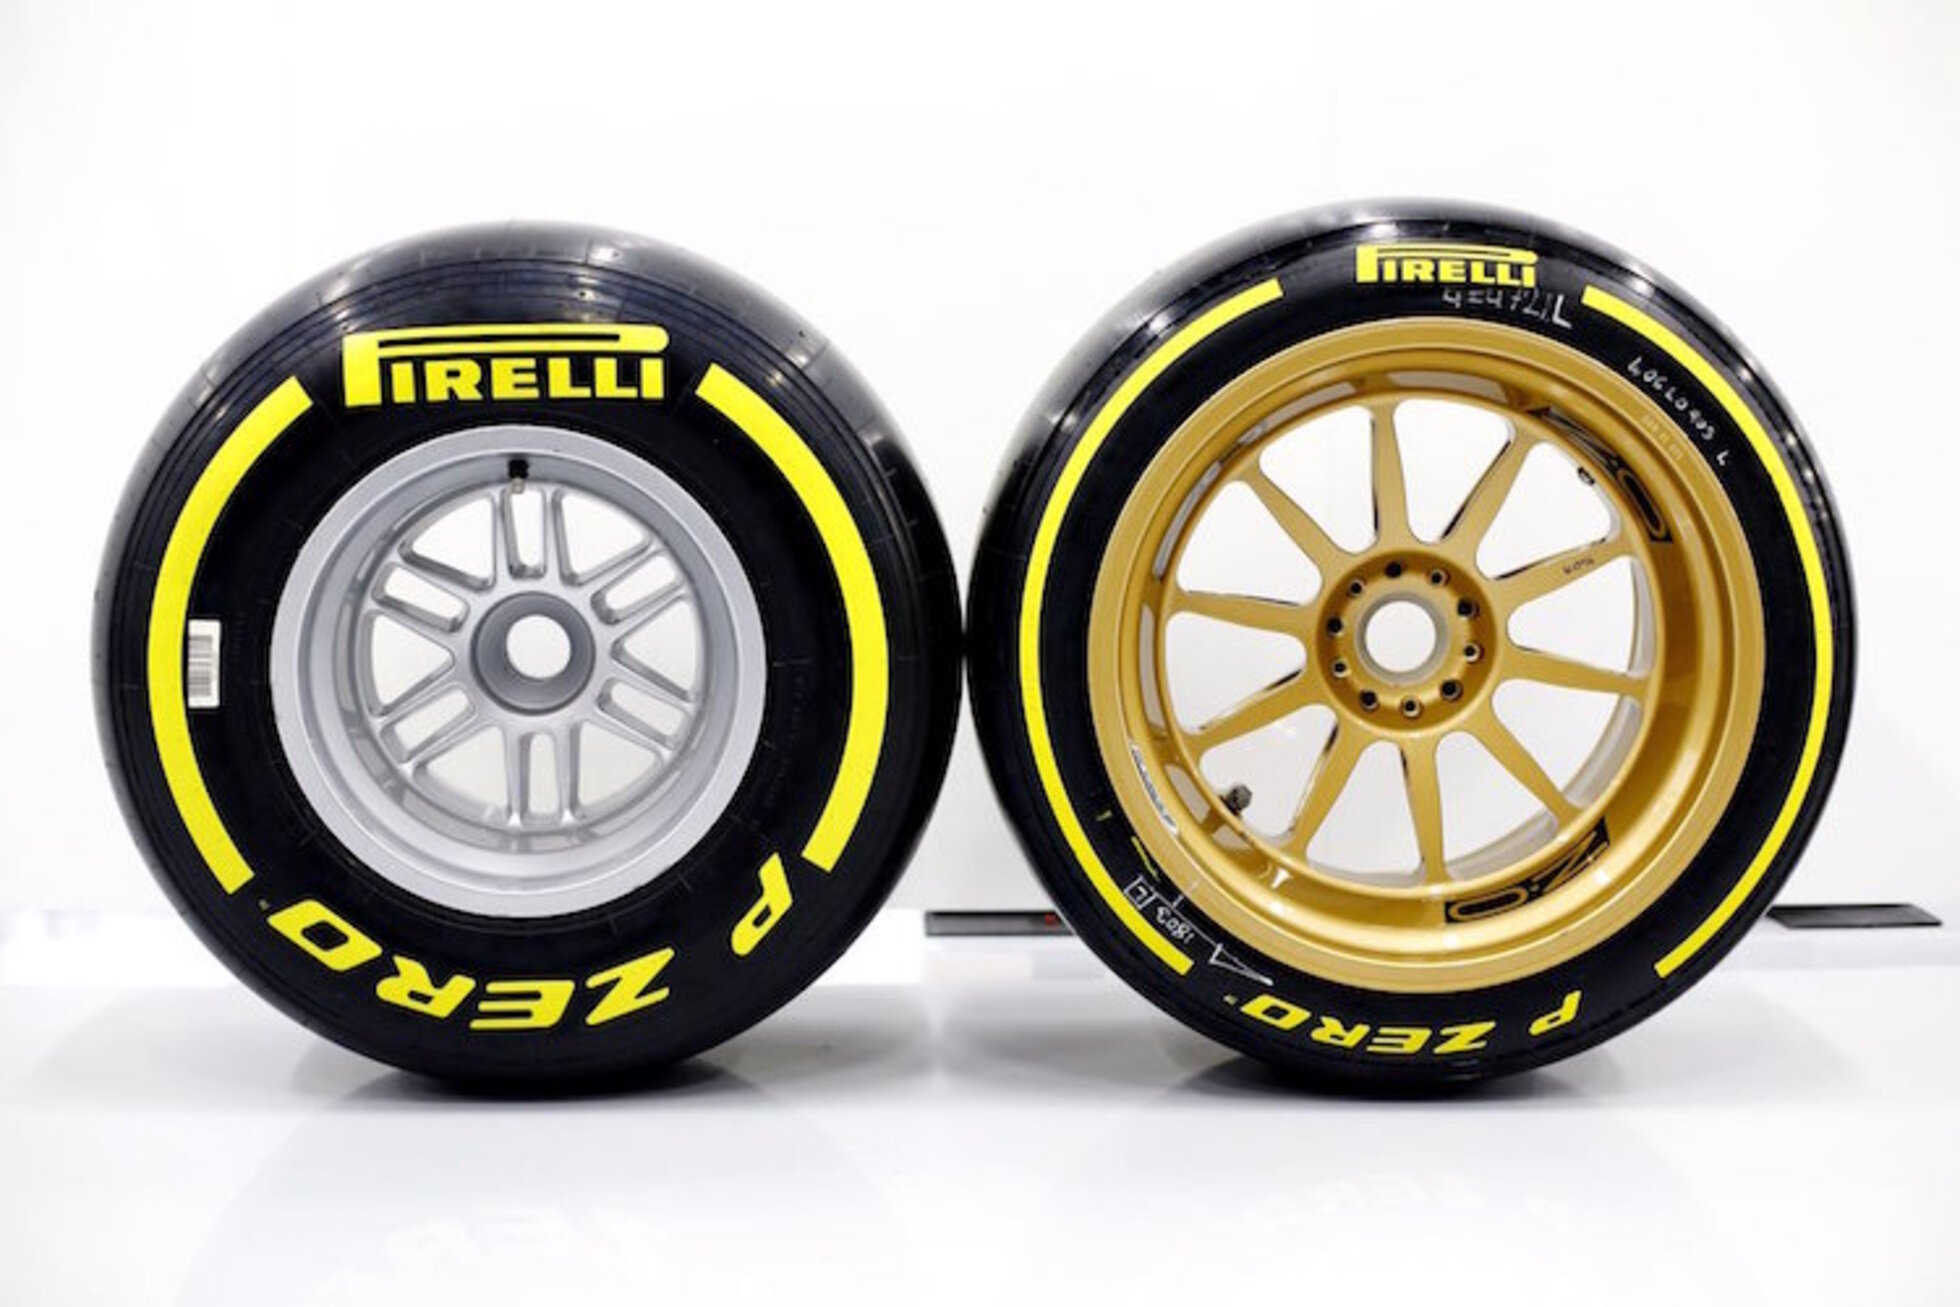 Pirelli Umstrittene 18 Zoll Reifen Test Ab Juli Formel 1 Speedweek Com